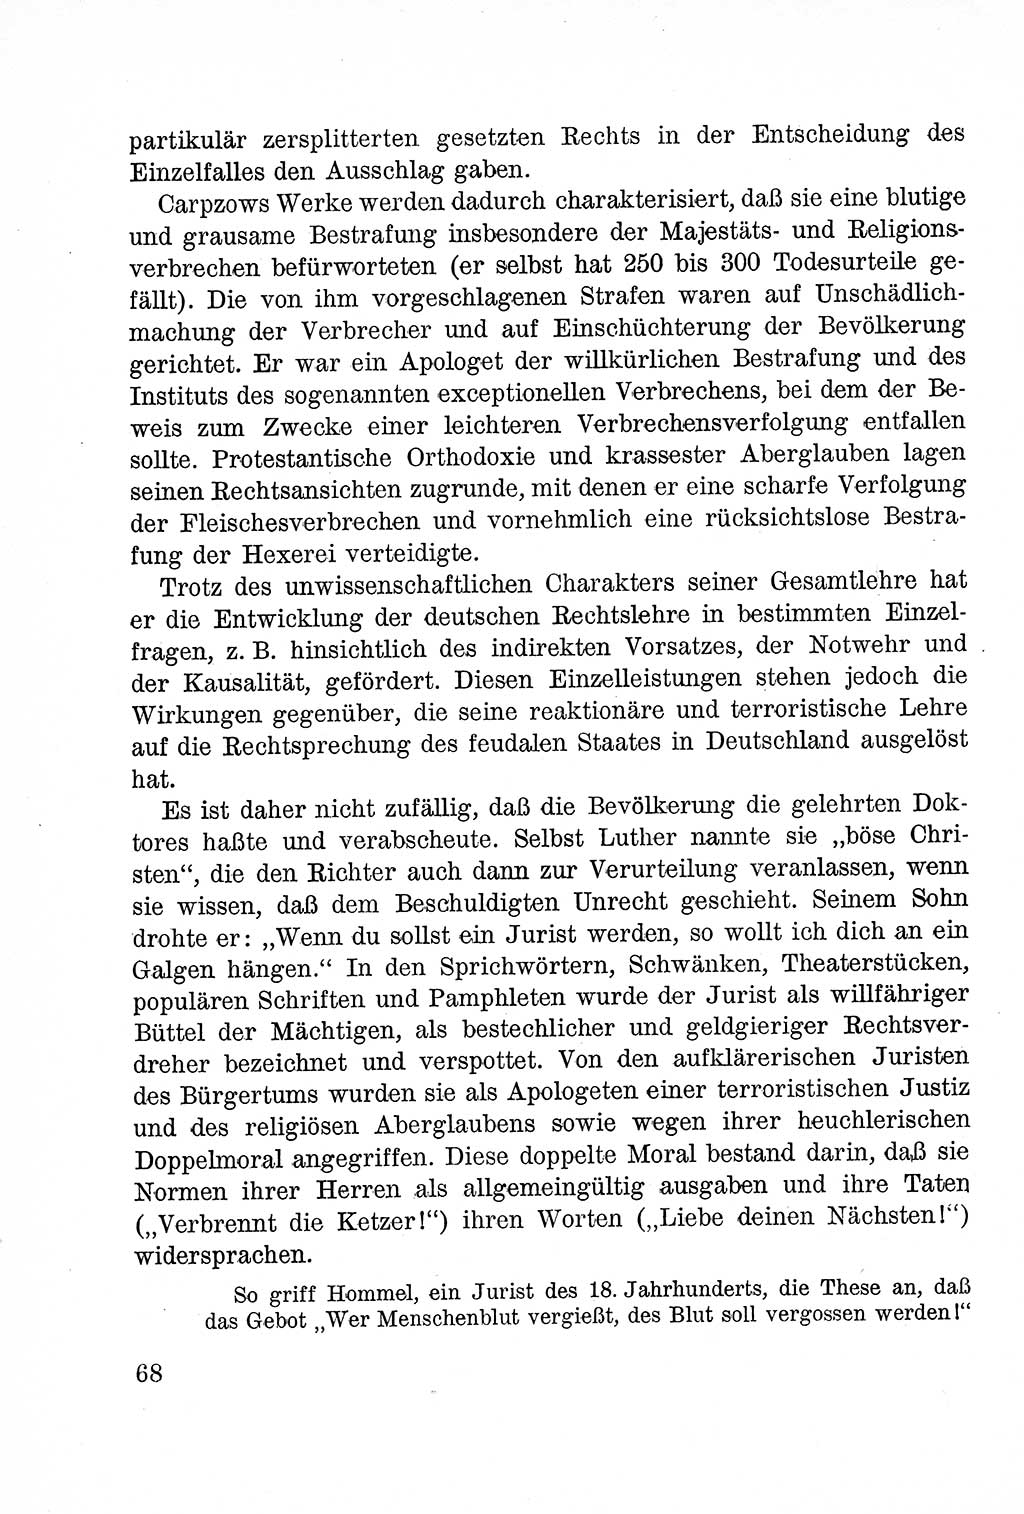 Lehrbuch des Strafrechts der Deutschen Demokratischen Republik (DDR), Allgemeiner Teil 1957, Seite 68 (Lb. Strafr. DDR AT 1957, S. 68)